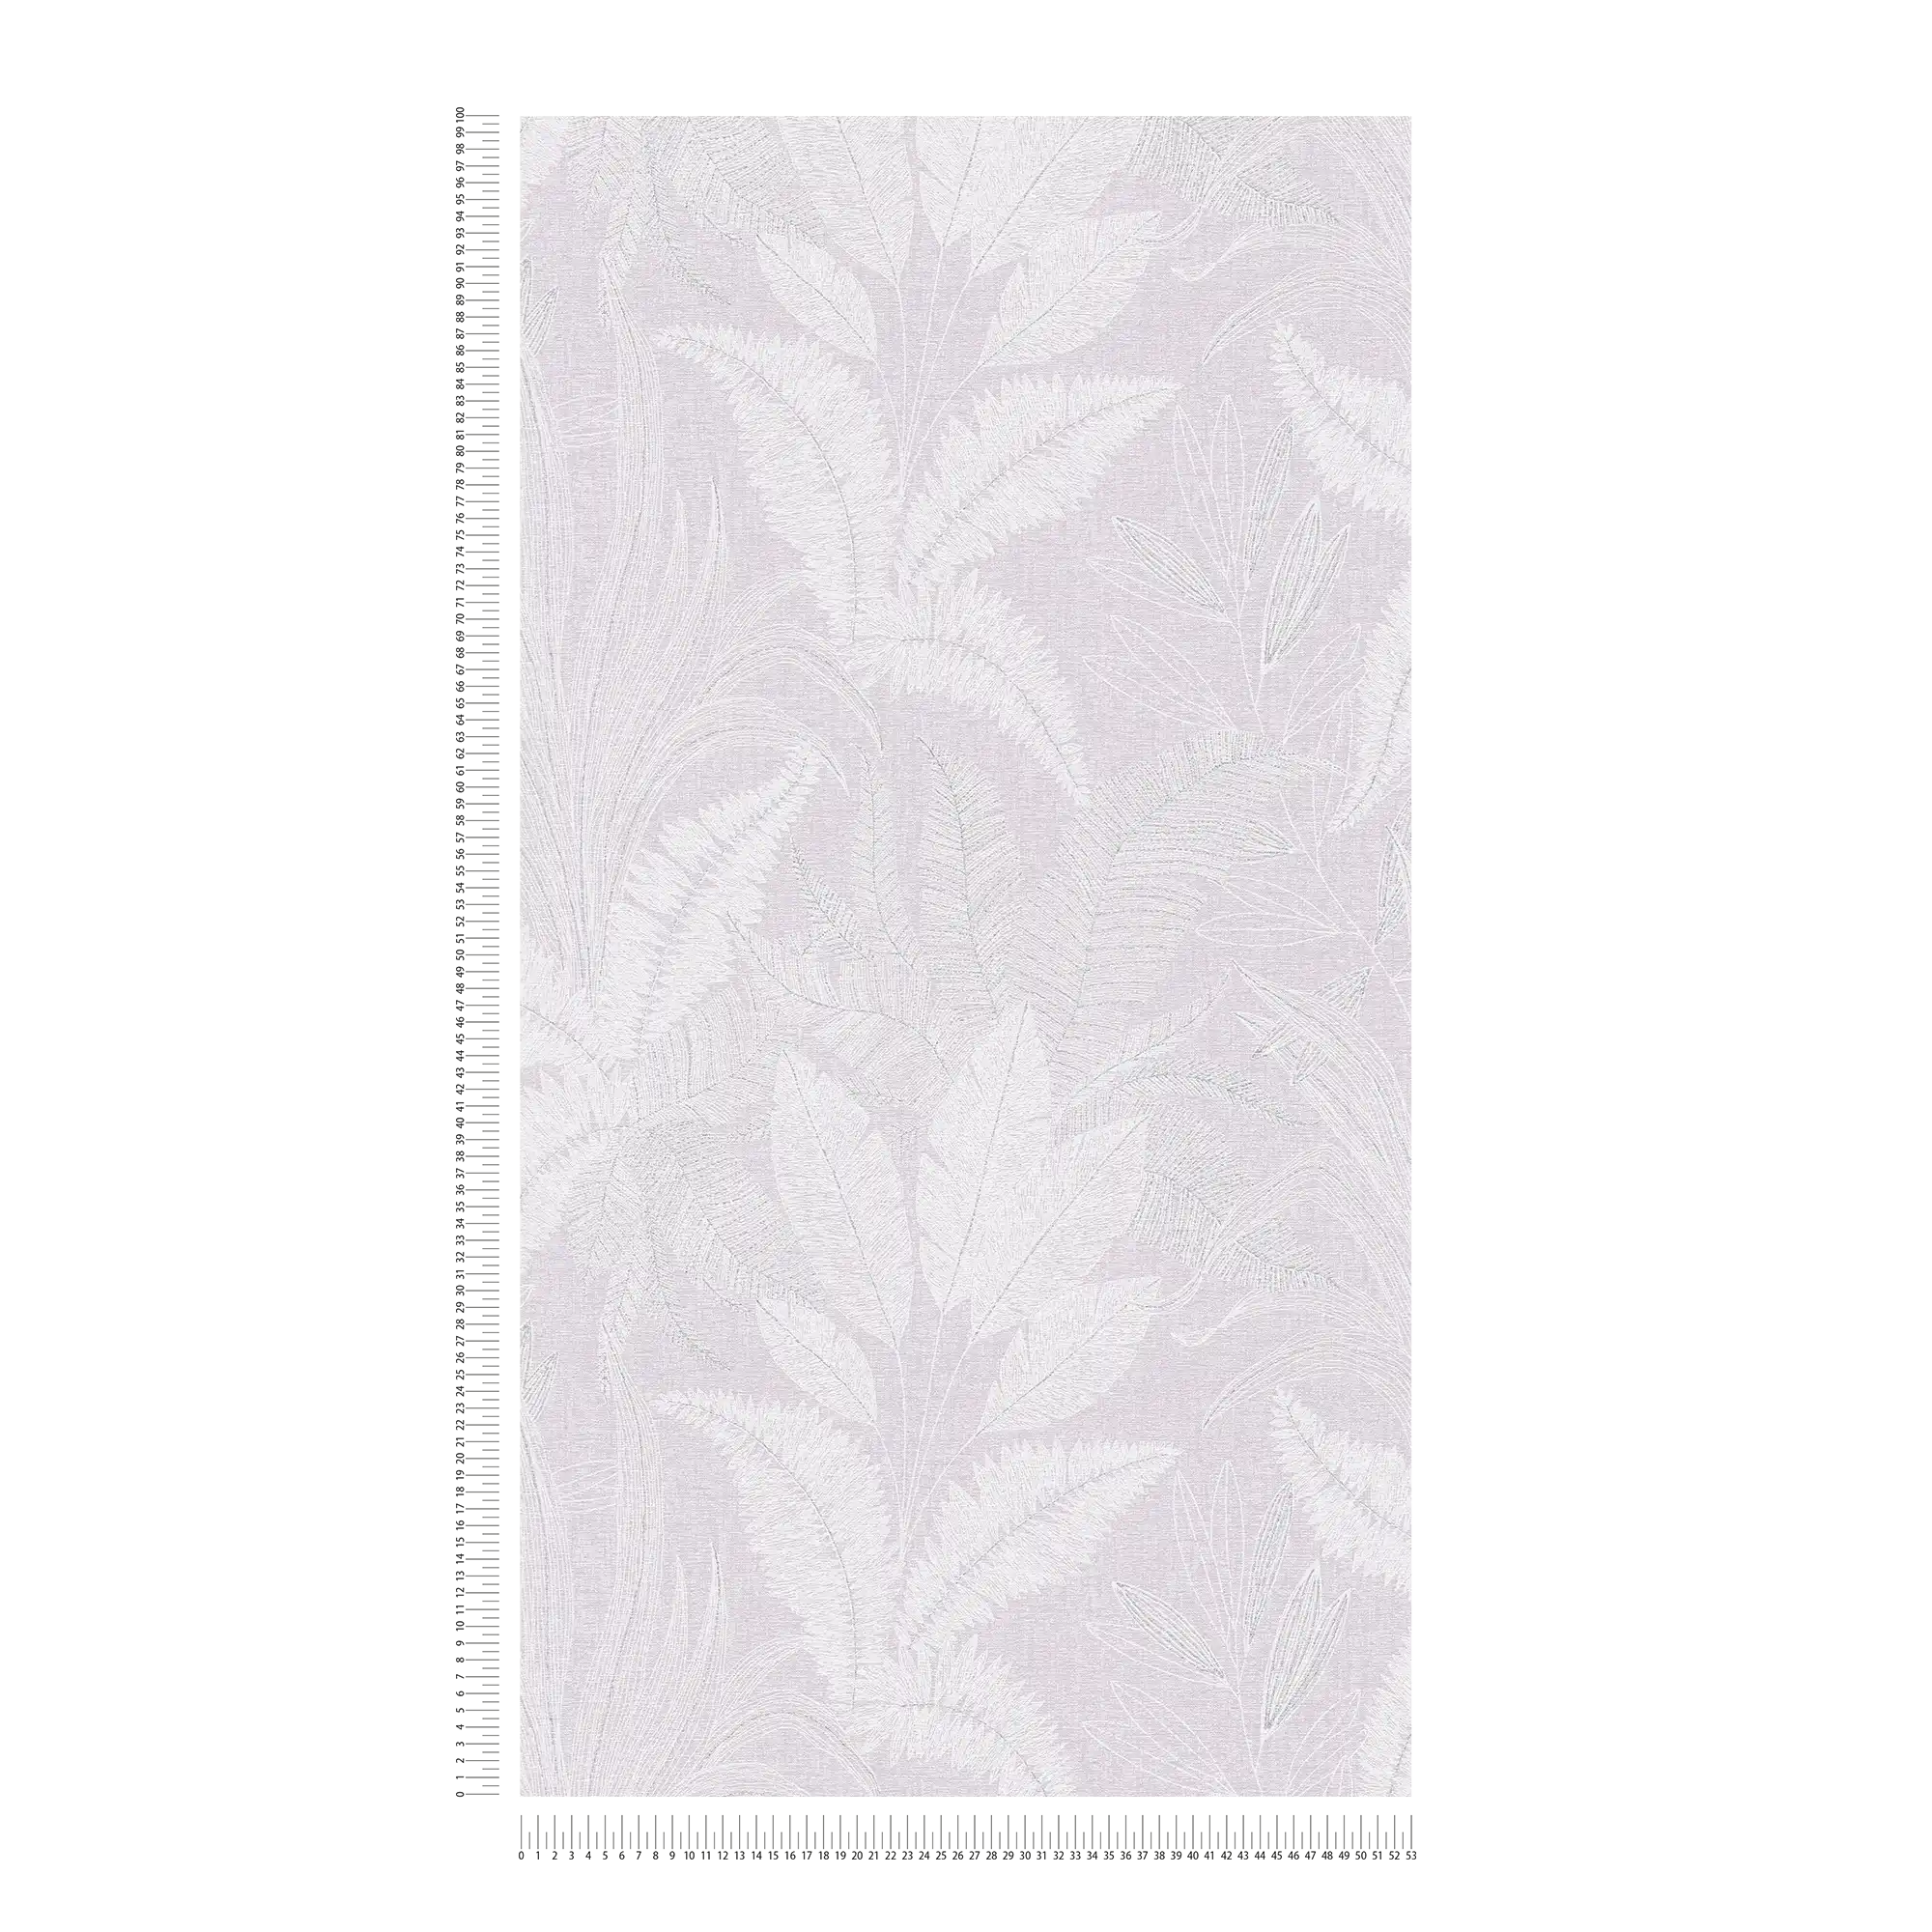             Vliesbehang met groot bladpatroon met lichte structuur - paars, wit, grijs
        